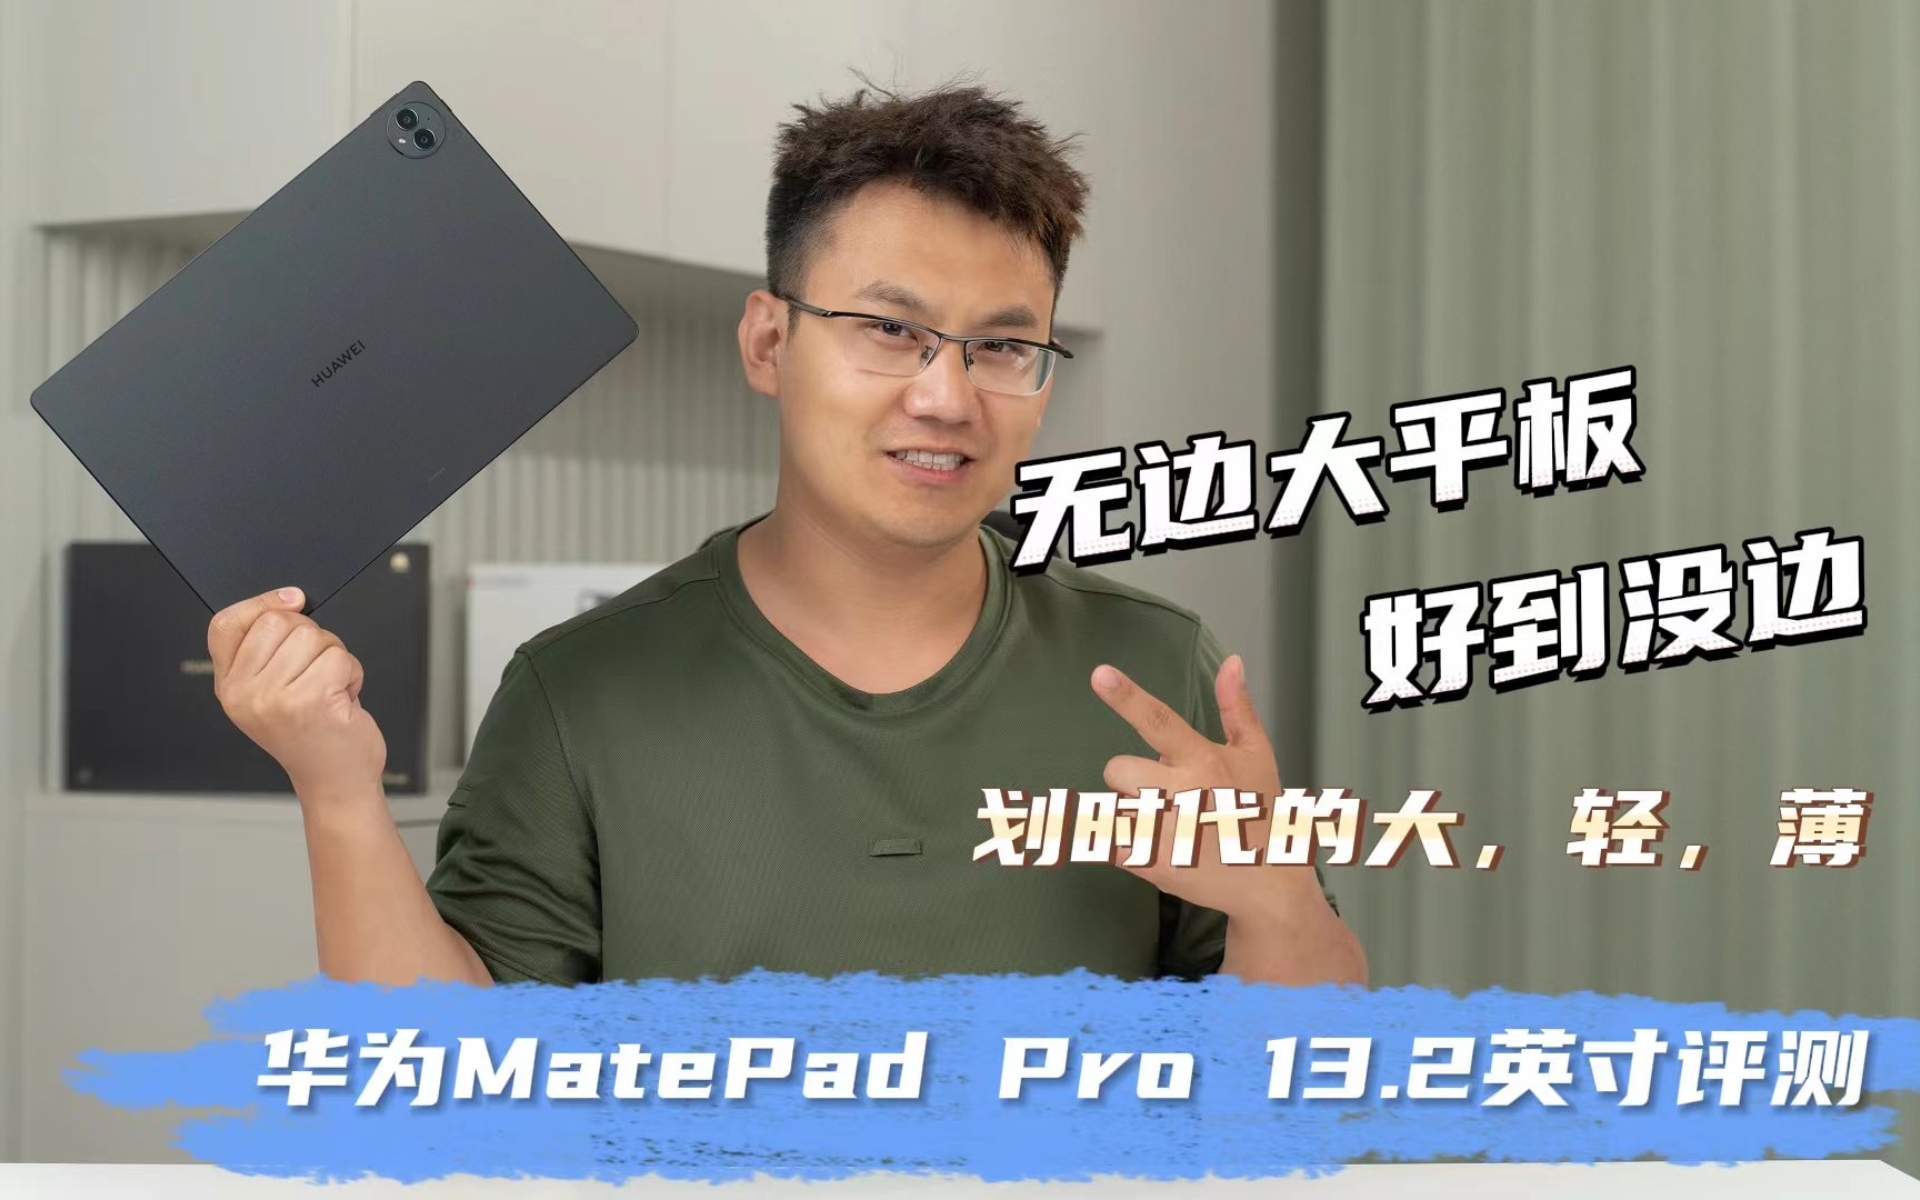 划时代的大、轻、薄——专业生产力工具华为MatePad Pro 13.2英寸评测